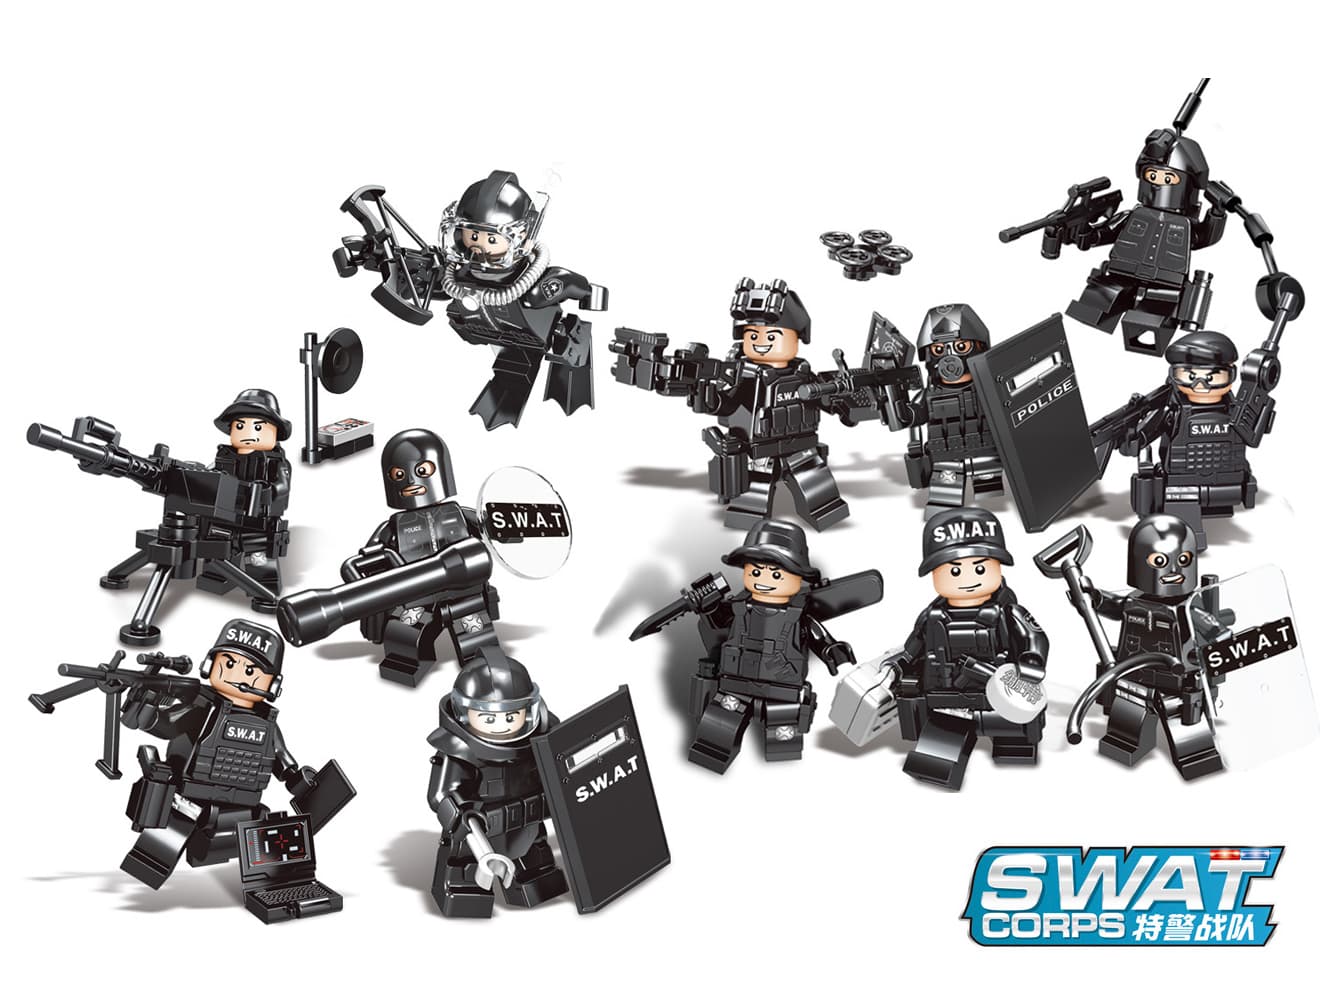 AFM SWAT シリーズ ミニフィギュア 12体セット A スワット 特殊警察 ブロック フィギュア 警察 ポリス 特殊部隊